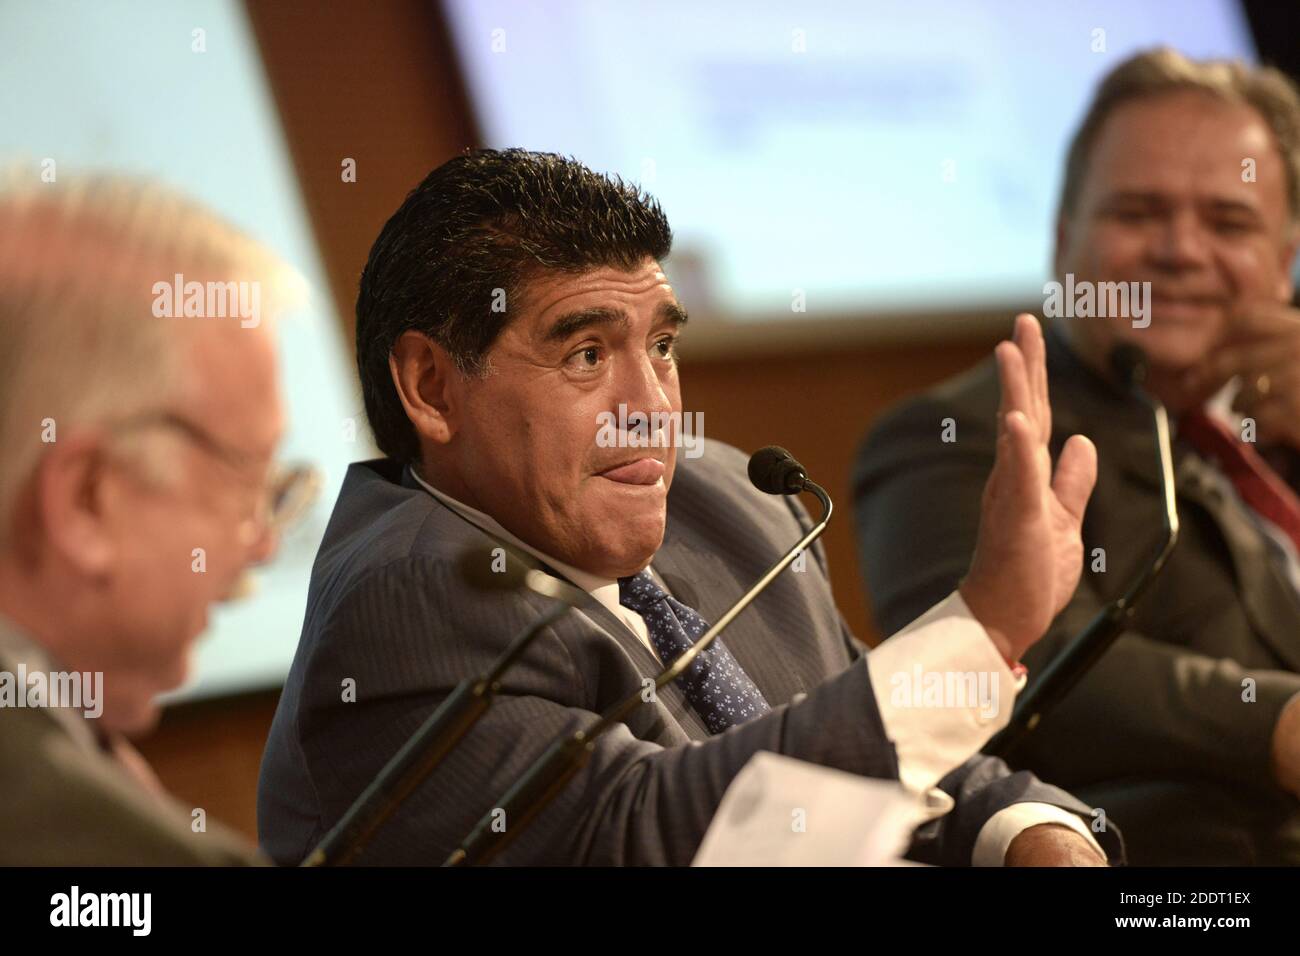 Leggendario calciatore argentino Diego Armando Maradona, uno dei più grandi calciatori di sempre, durante una conferenza stampa, a Milano. Foto Stock